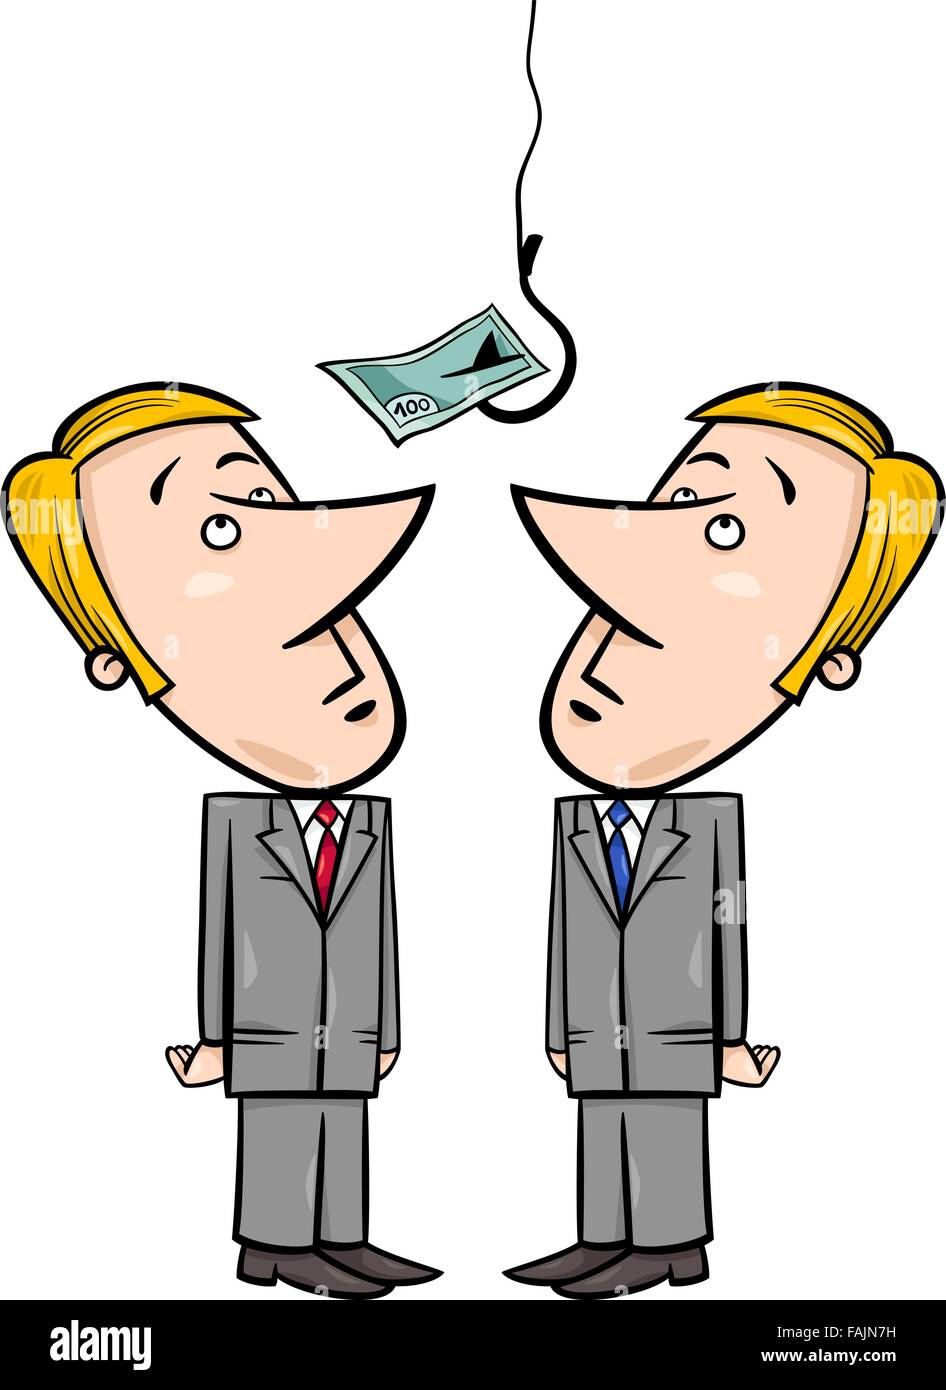 Begriff Cartoon Illustration von zwei Geschäftsleute suchen auf Geld Köder am Angelhaken Stock Vektor